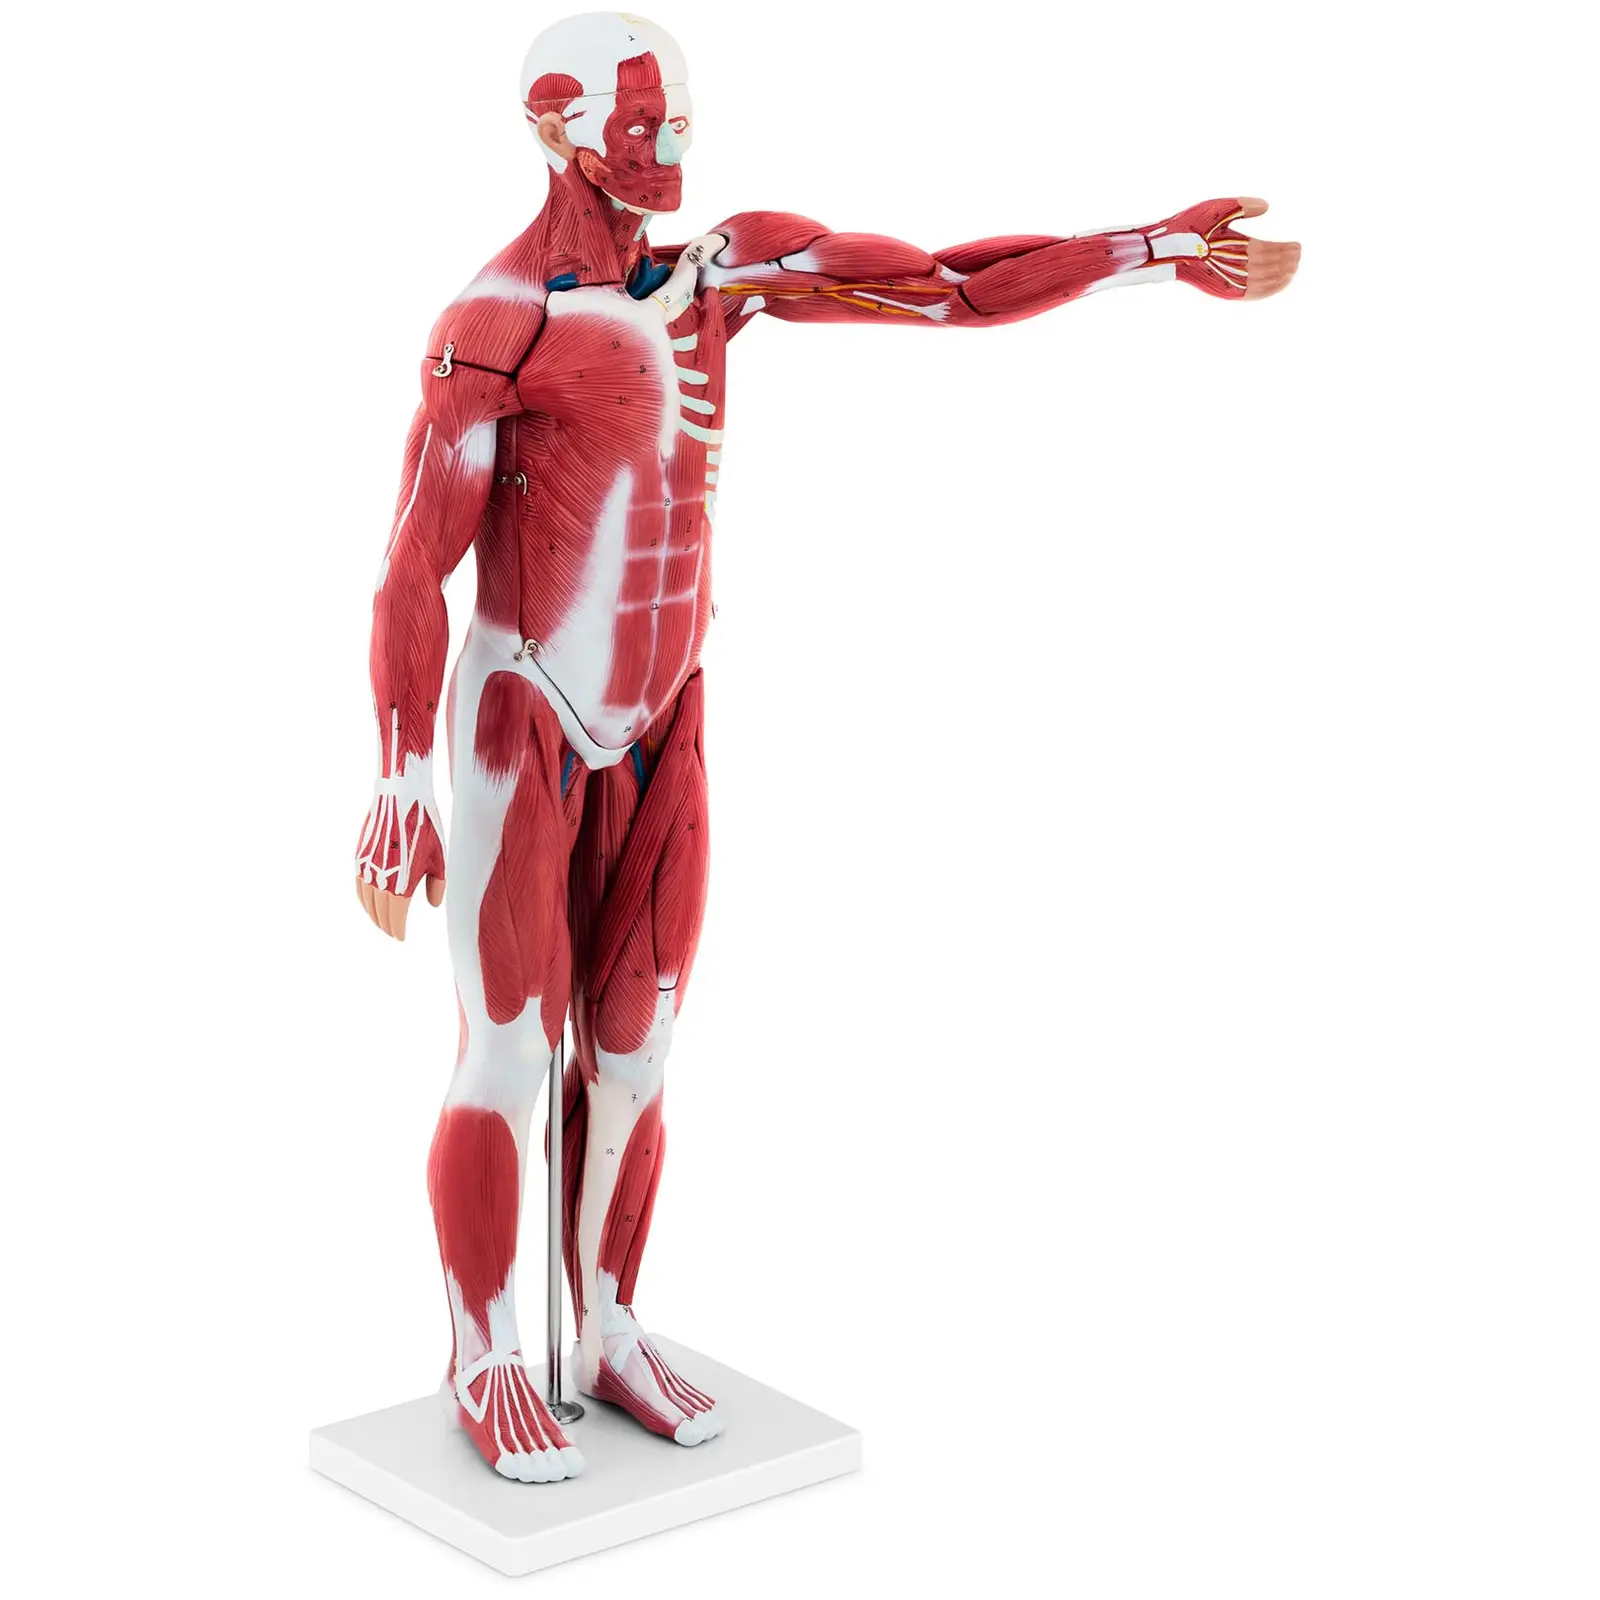 Manechin Mușchii Corpului Uman - unisex - 27 piese - 76 cm înălțime